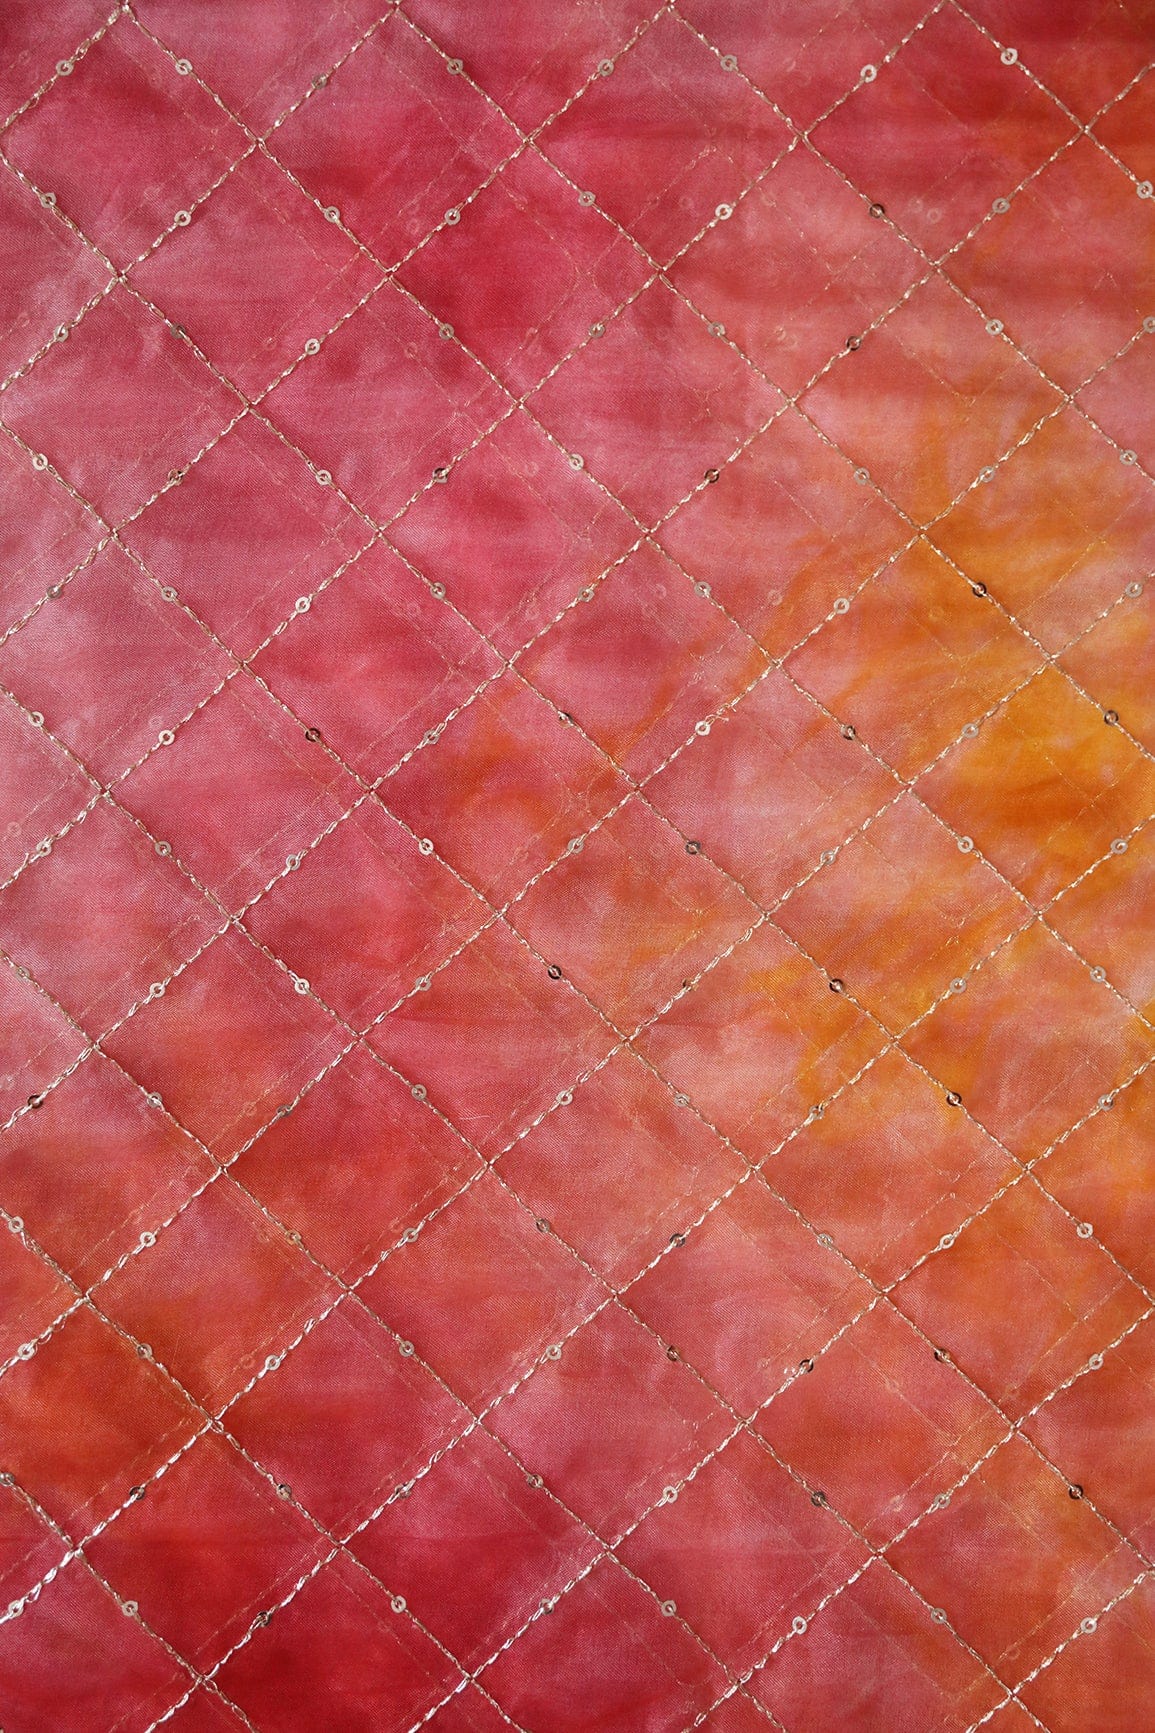 doeraa LEHENGA SET Pink And Orange Unstitched Lehenga Set Fabric (3 Piece)